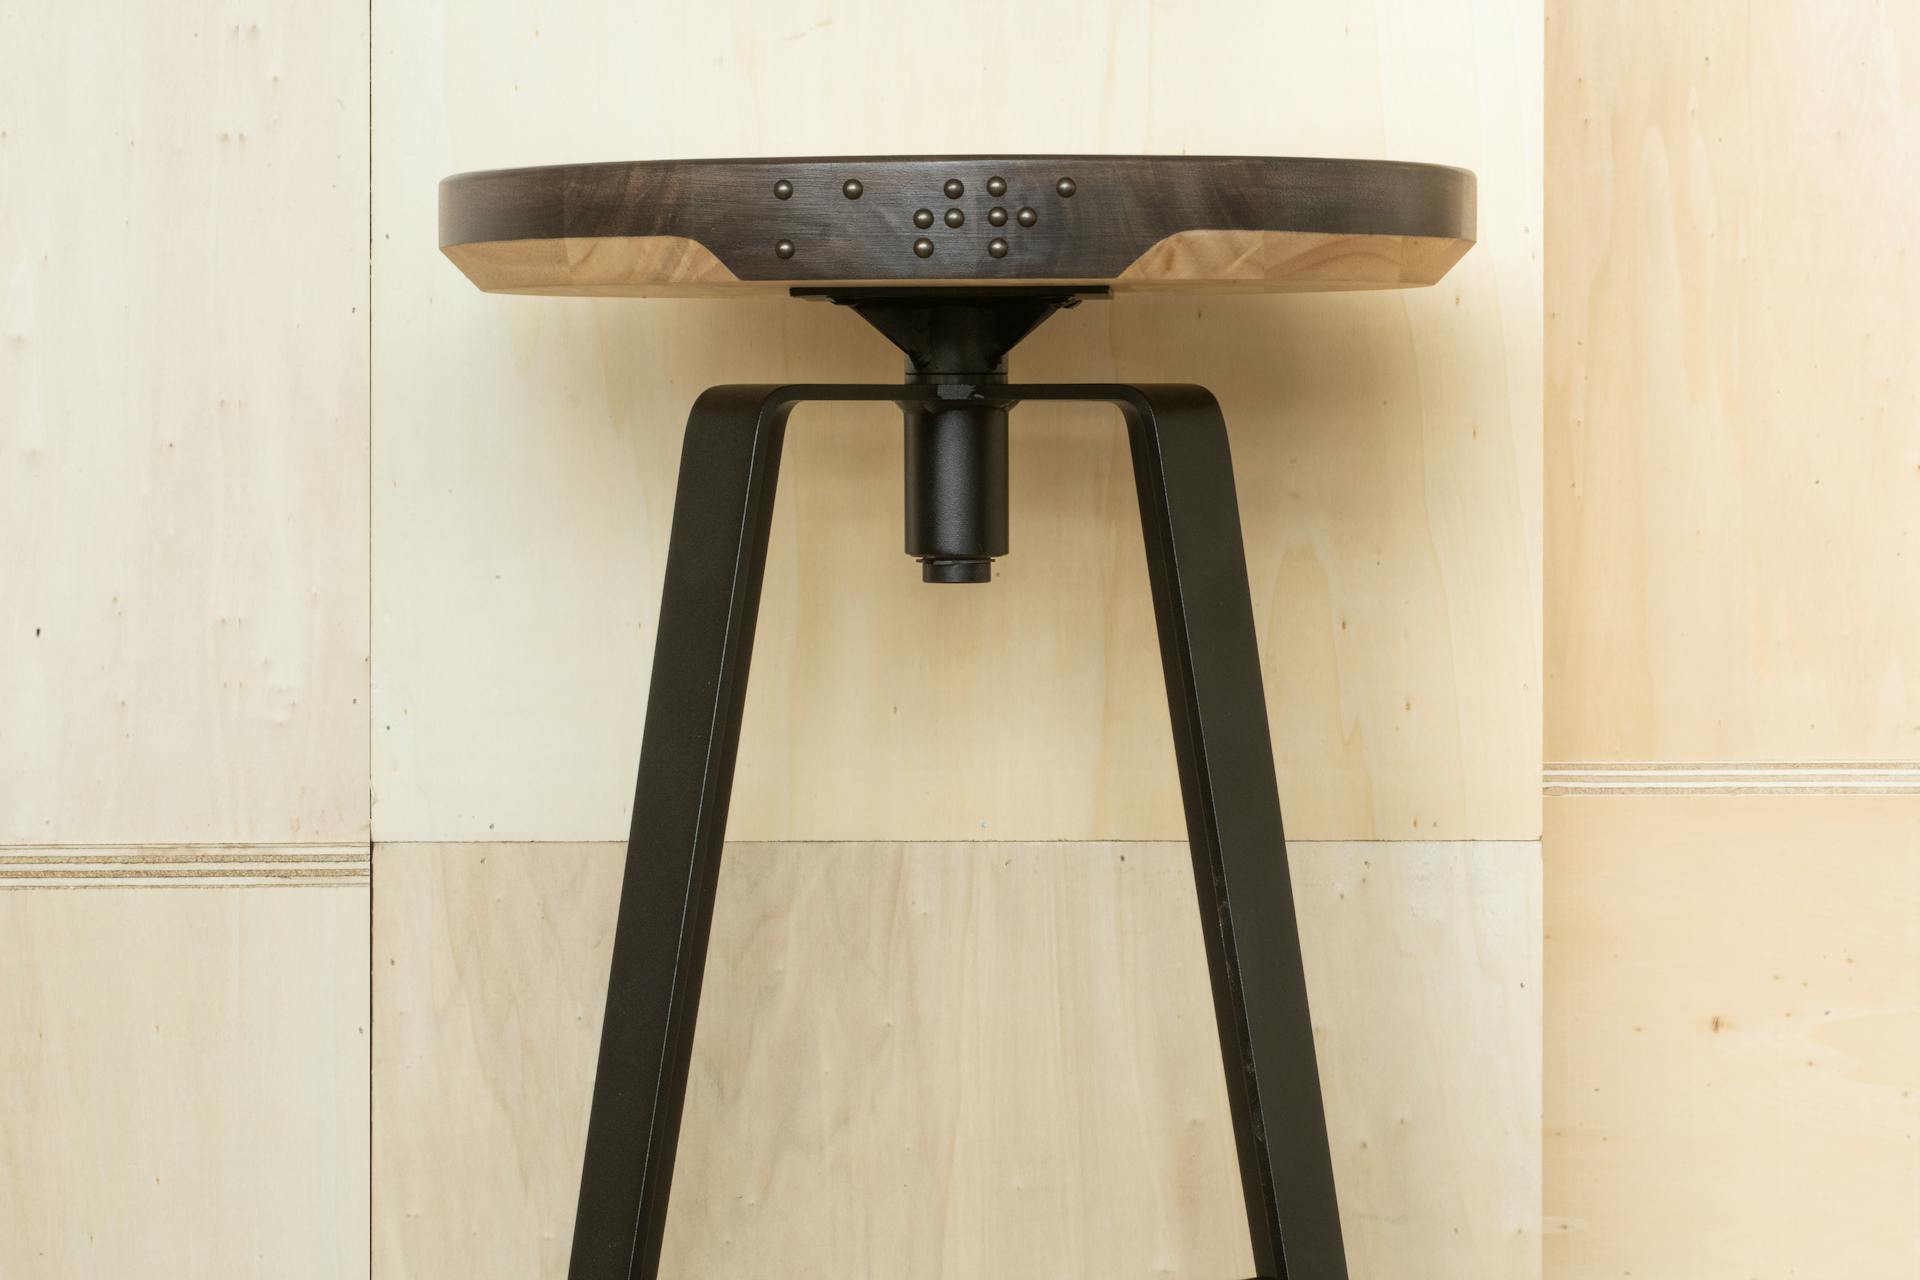 Le tabouret design de bois et de métal SISSI, un design produit conçu par les designers de l'agence de design graphique Studio Katra.